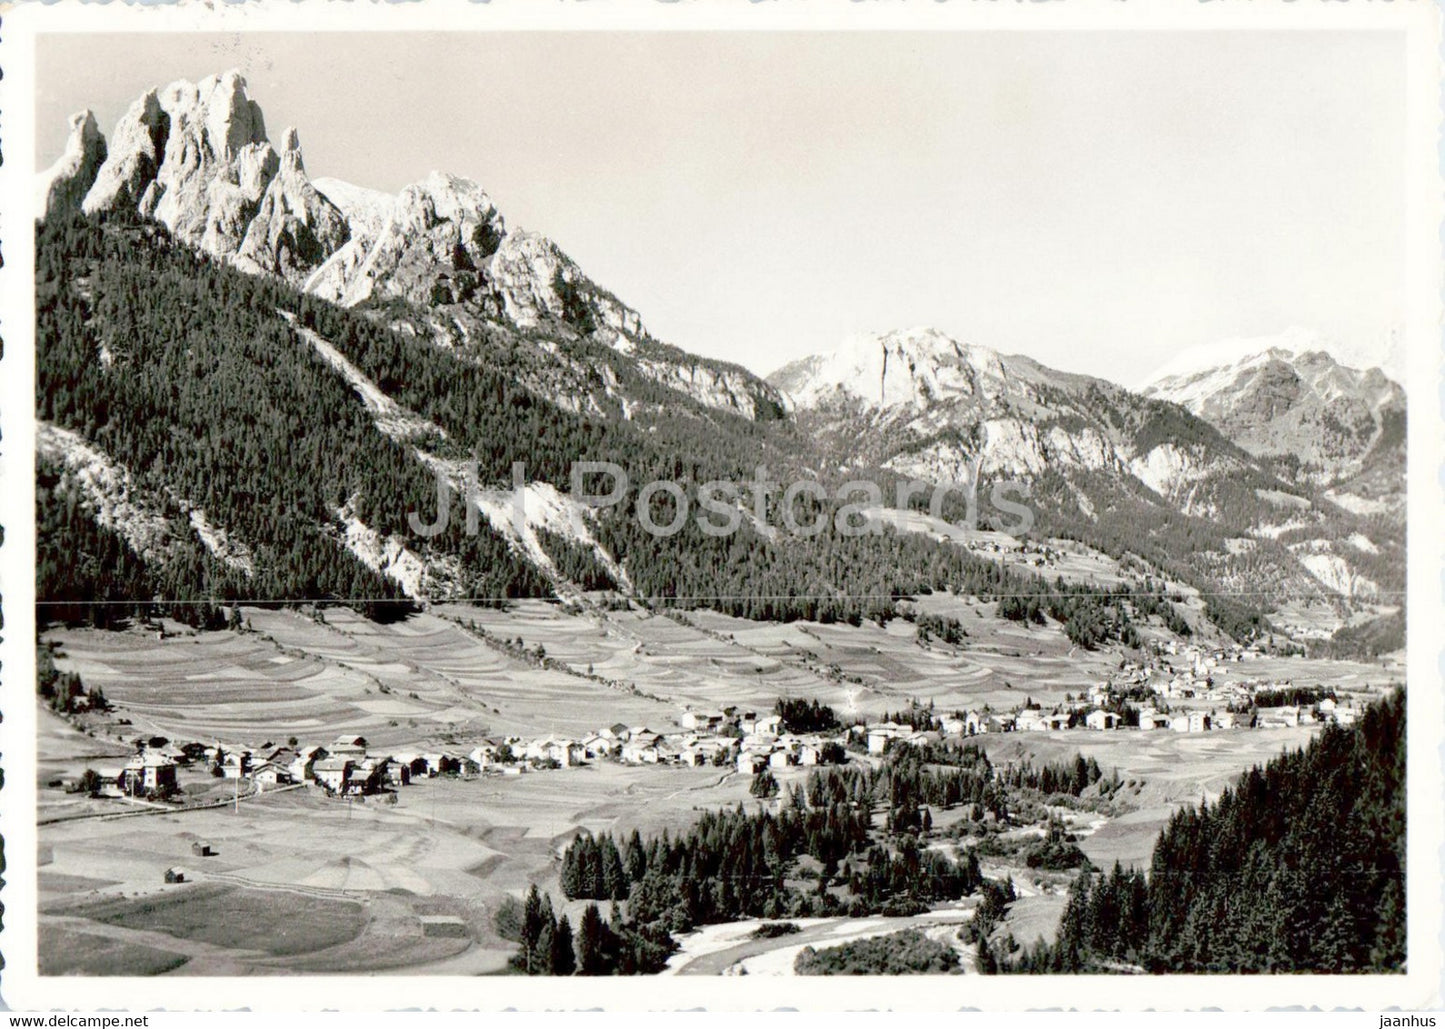 Dolomiti di Fassa - Pozza coi Dirupi di Larsec - 1956 - old postcard - Italy - used - JH Postcards